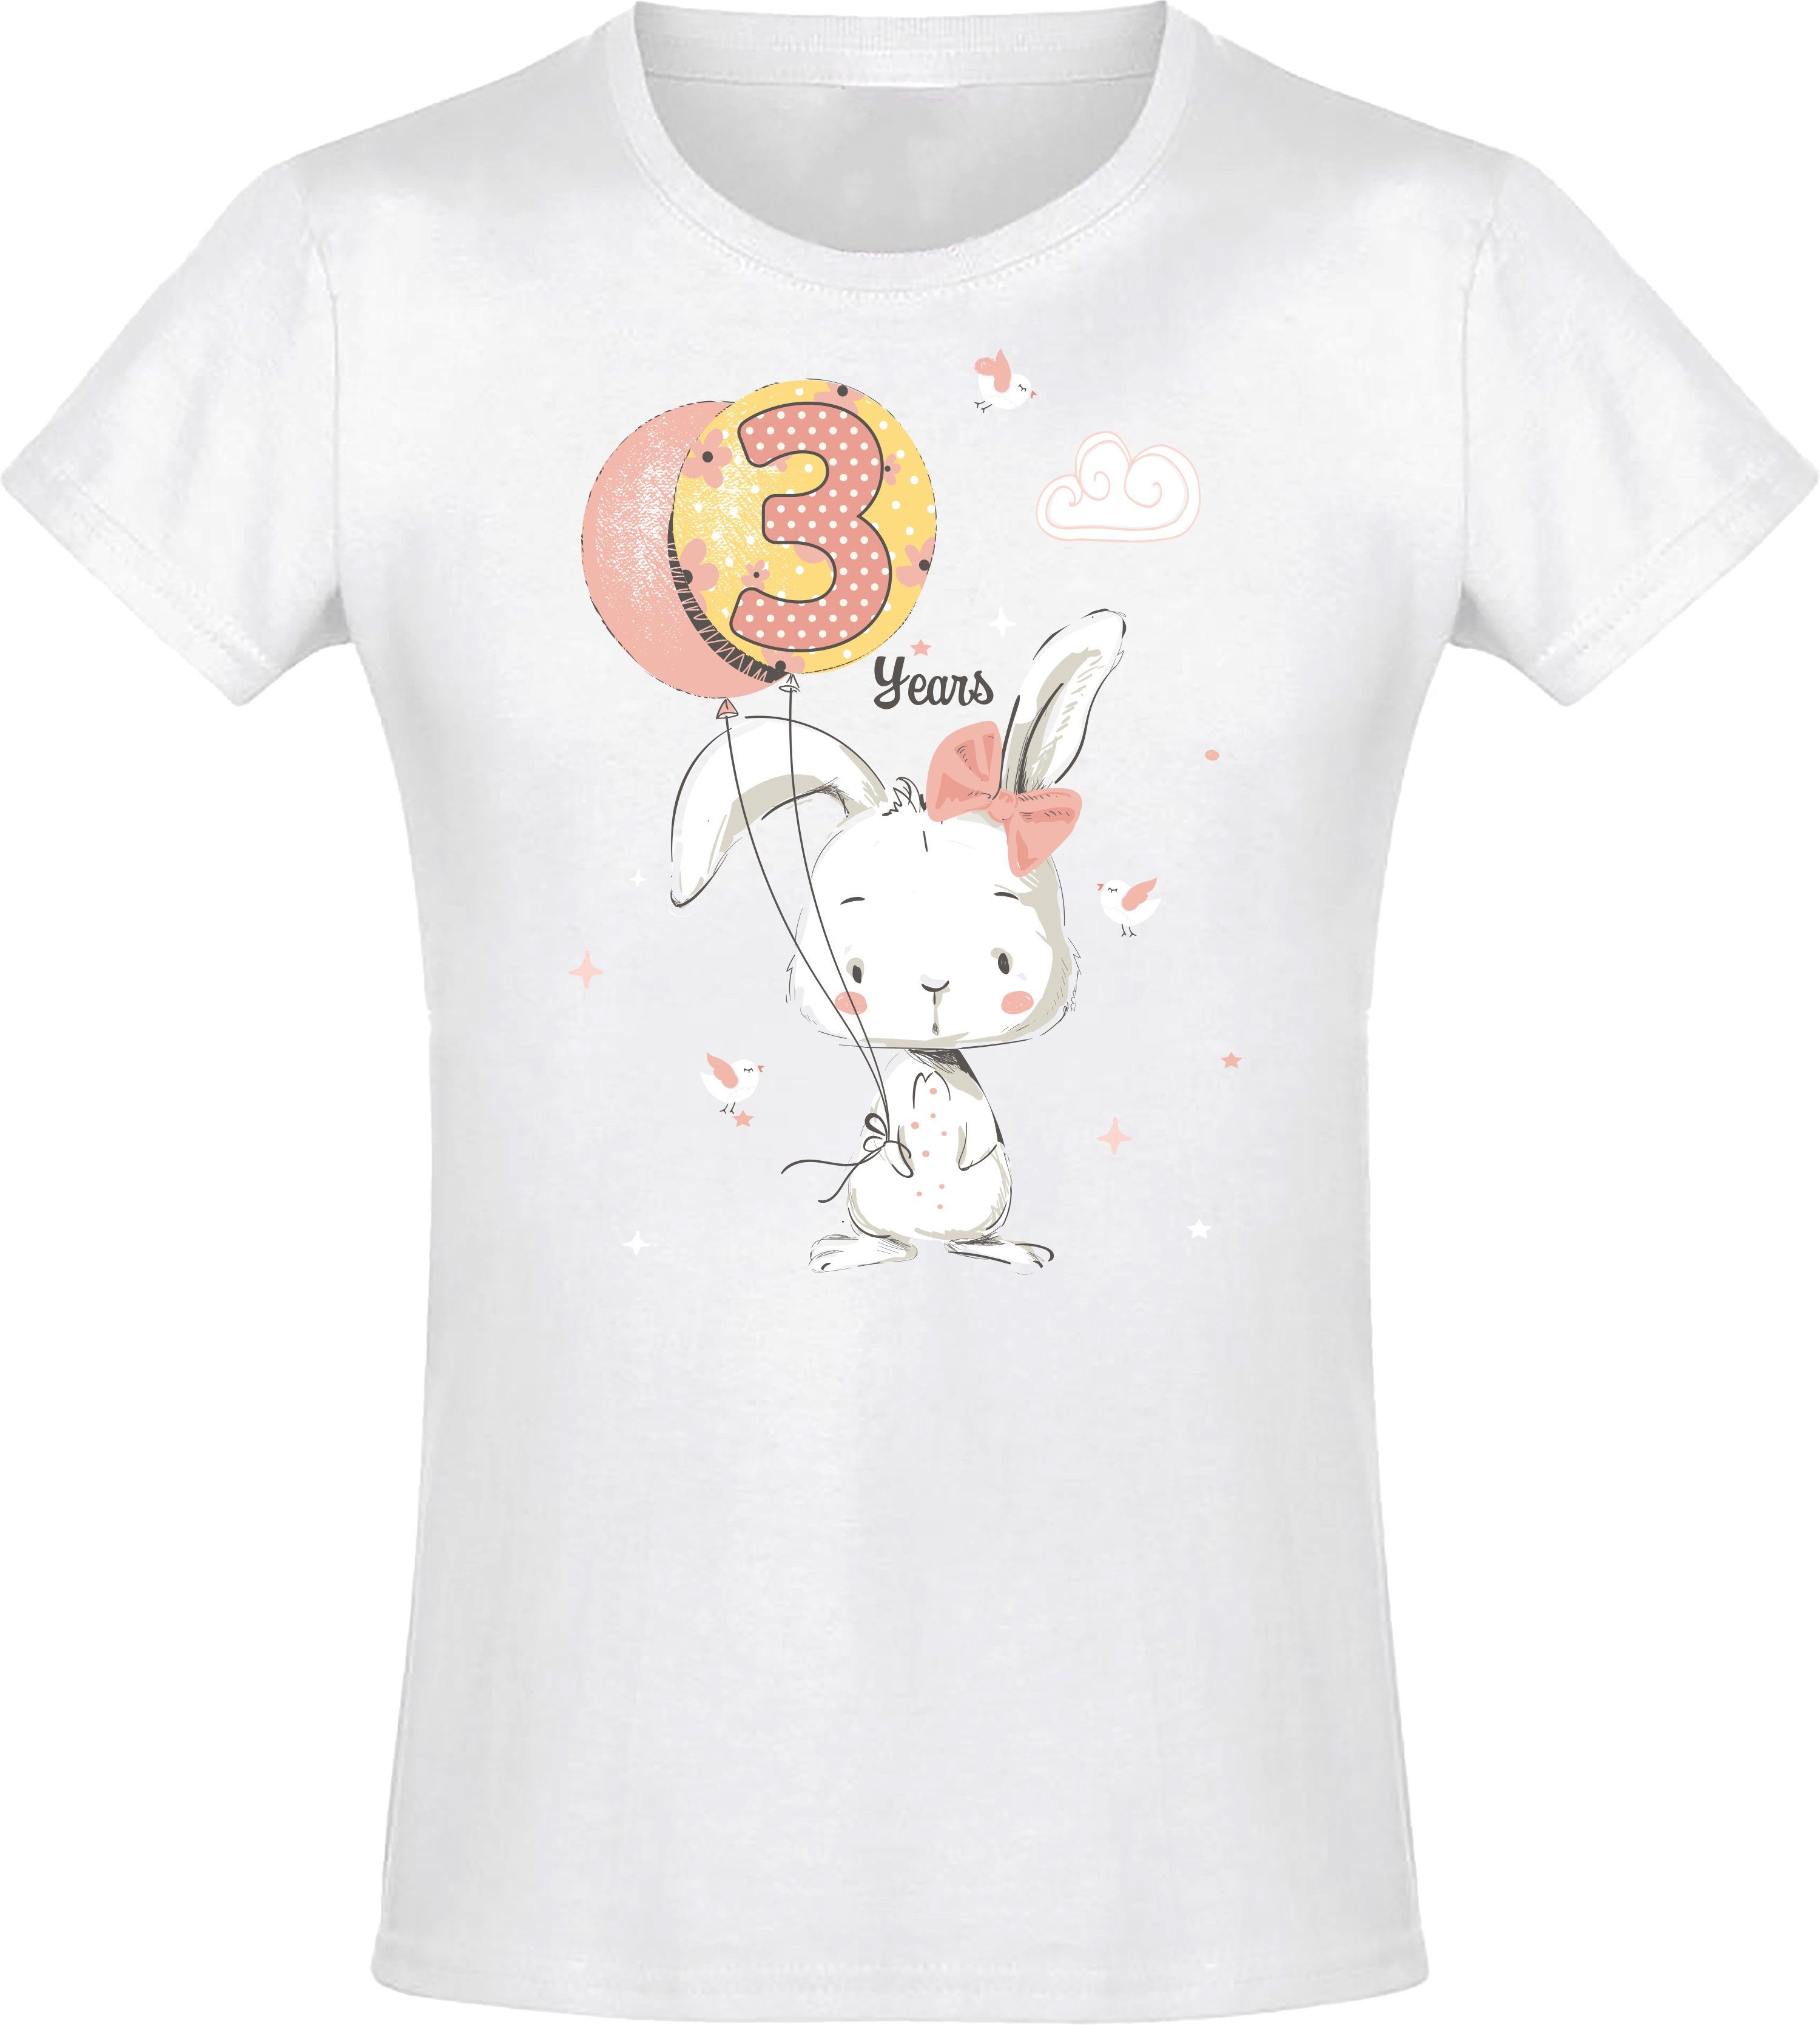 Baddery Print-Shirt Geburstagsgeschenk für Mädchen : 3 Jahre mit Hase hochwertiger Siebdruck, aus Baumwolle Weiß